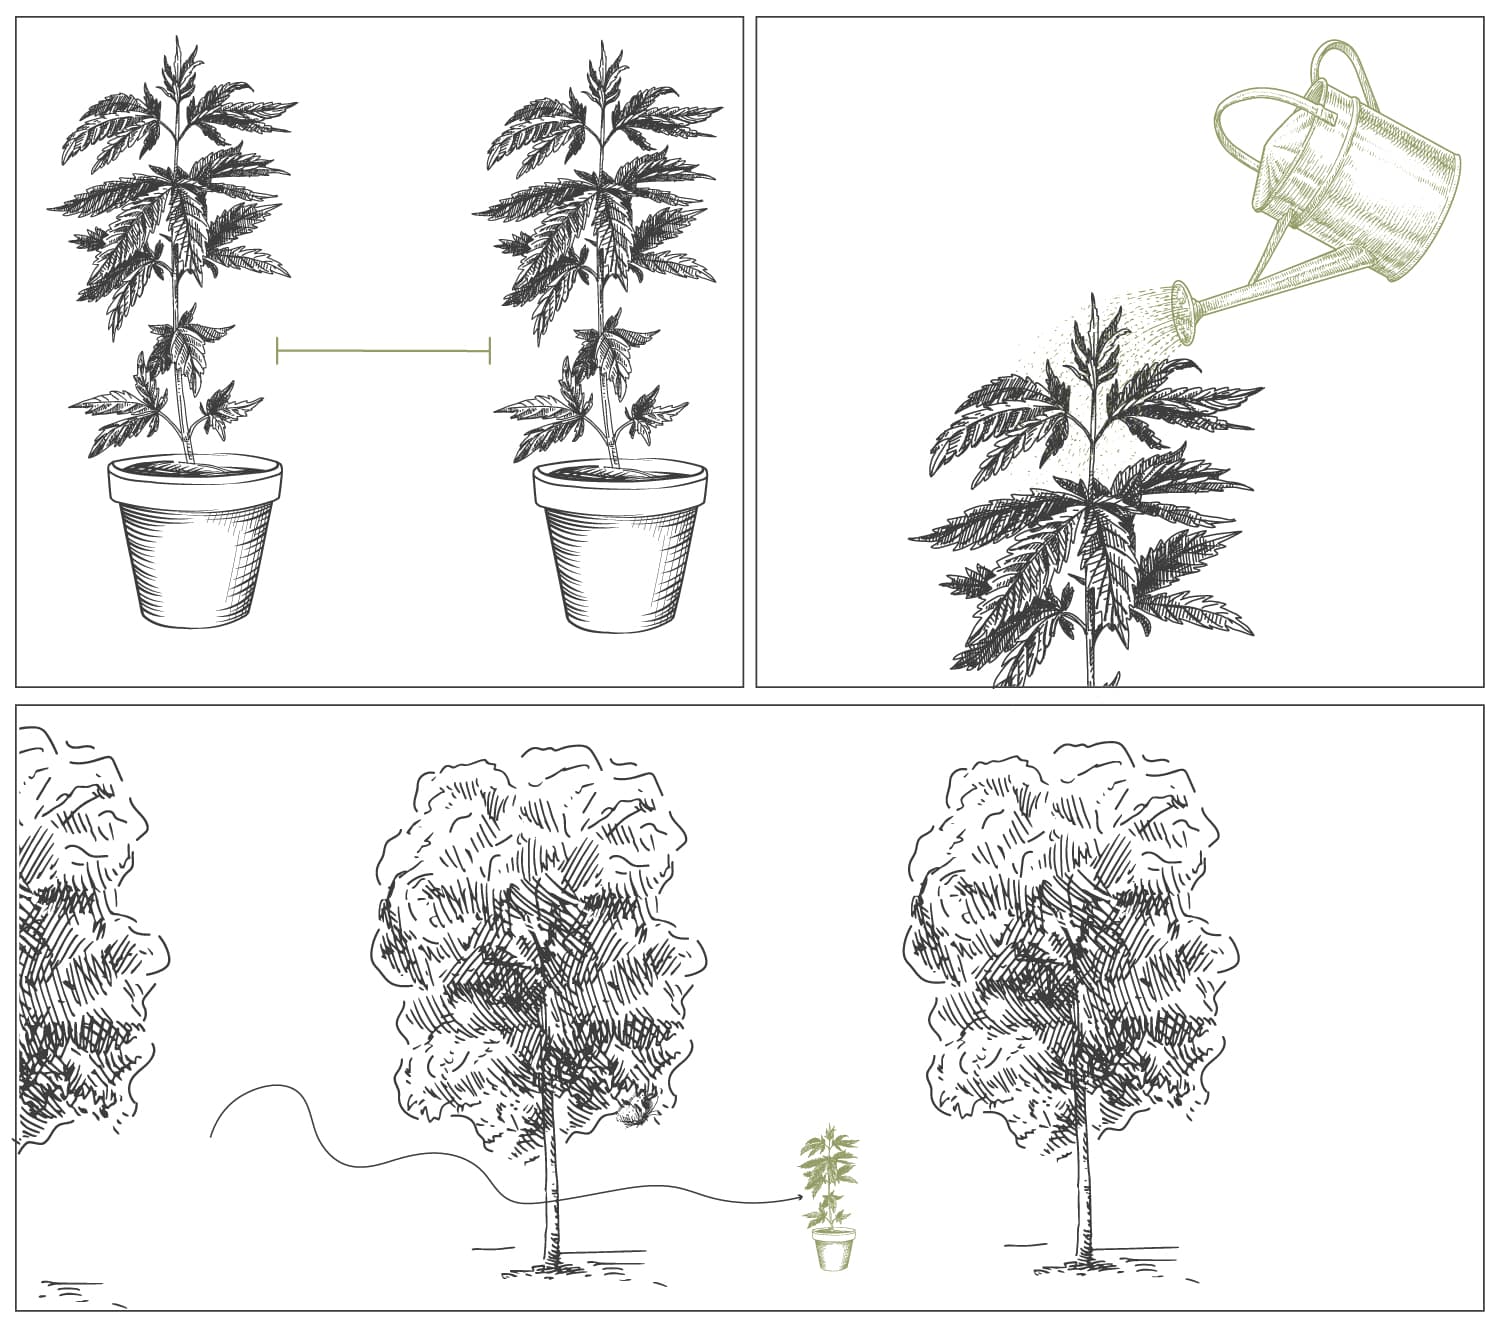 How To Grow Cannabis With Dense BudsCómo cultivar marihuana con cogollos densos